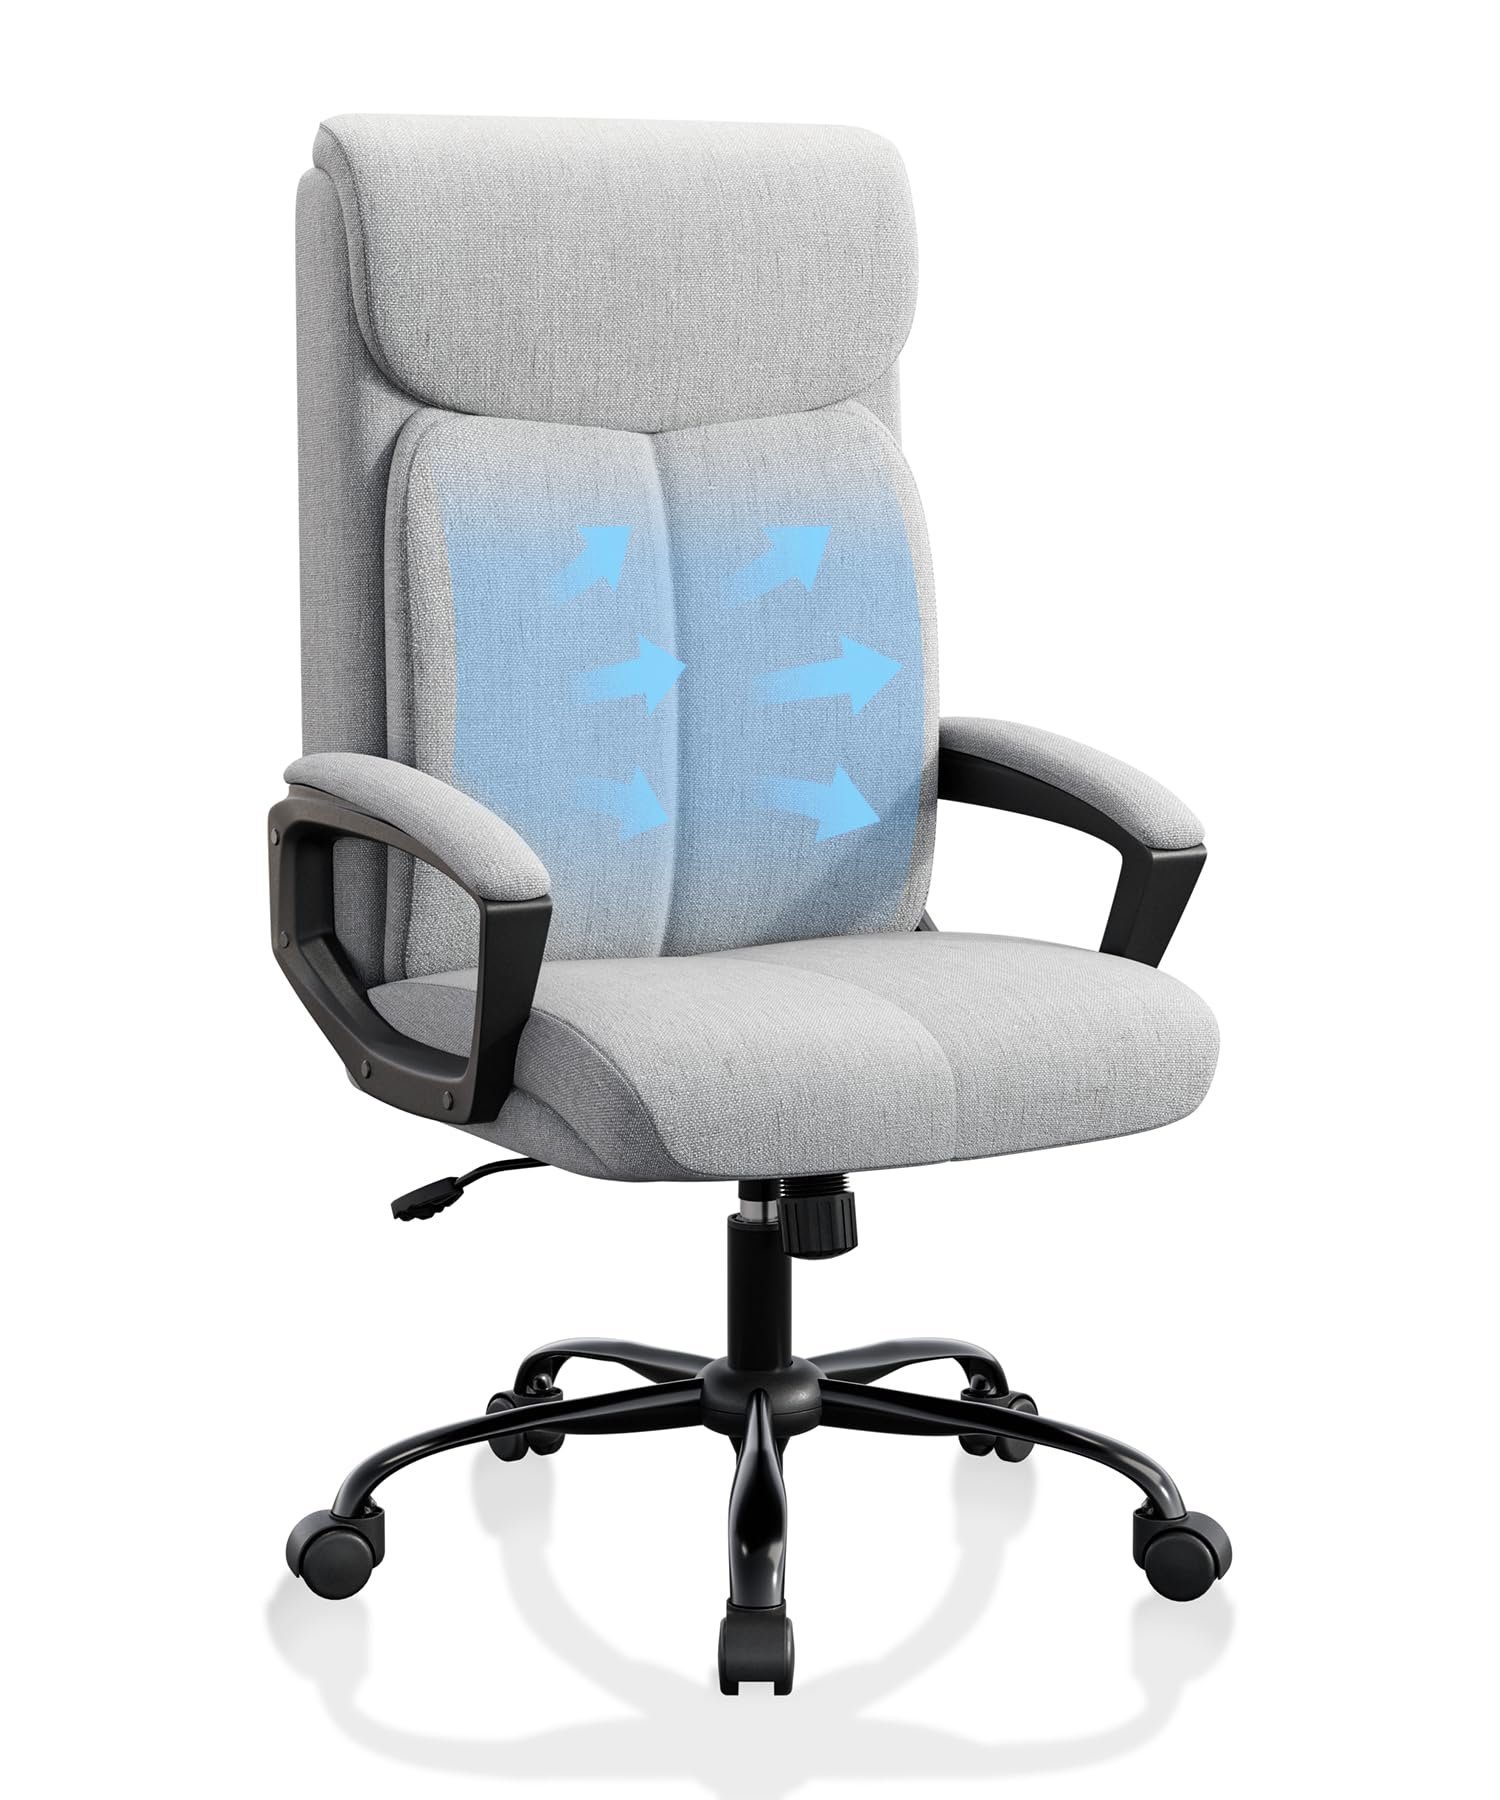 Gaming-Stuhl 90°-110° neigbar, Kopfstütze, drehbar, Armlehnen, Mit Grau Fangqi Rückenlehne Rollen,Hochdichtes Bürostuhl,360° mit leise gepolsterten Netzgewebe